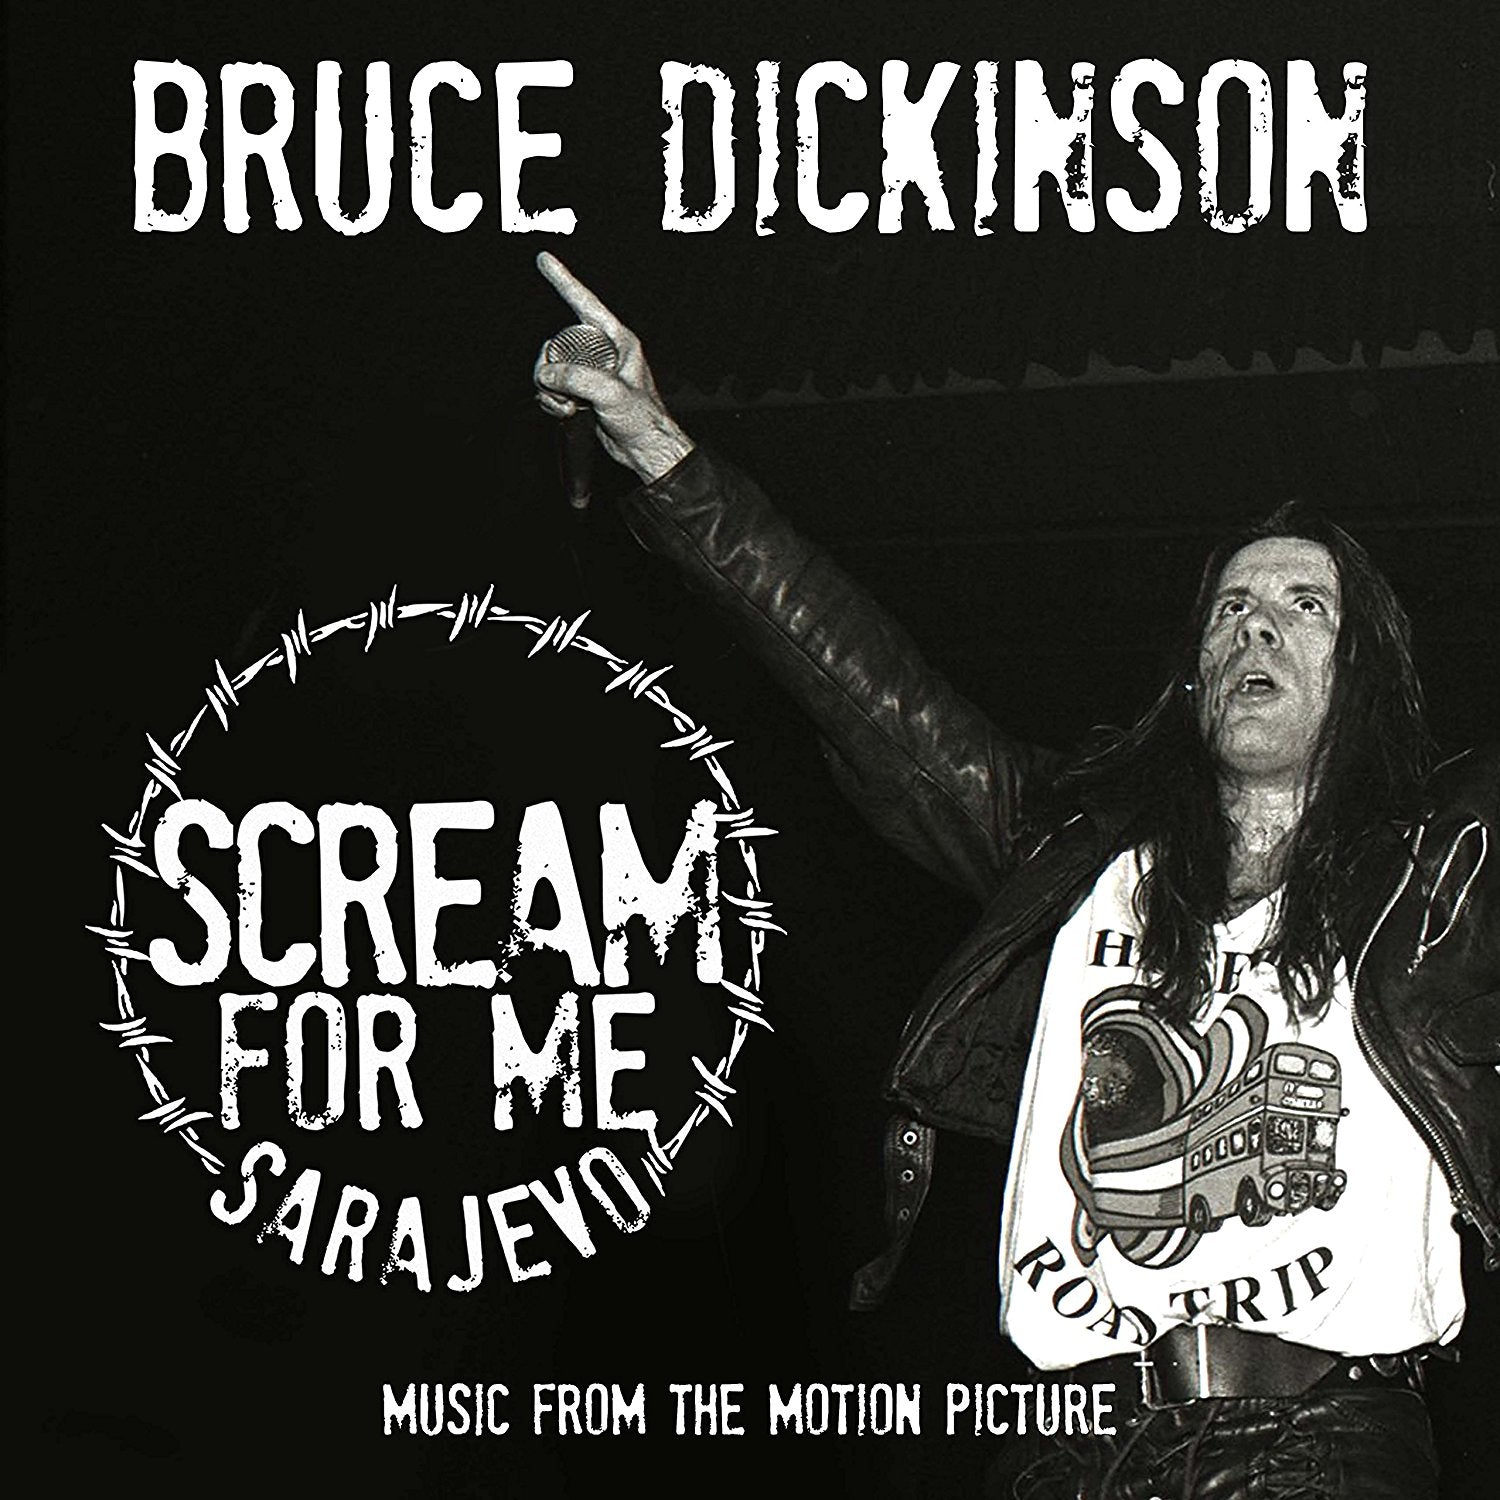 Bruce Dickinson "Scream For Me Sarajevo" Digipak CD